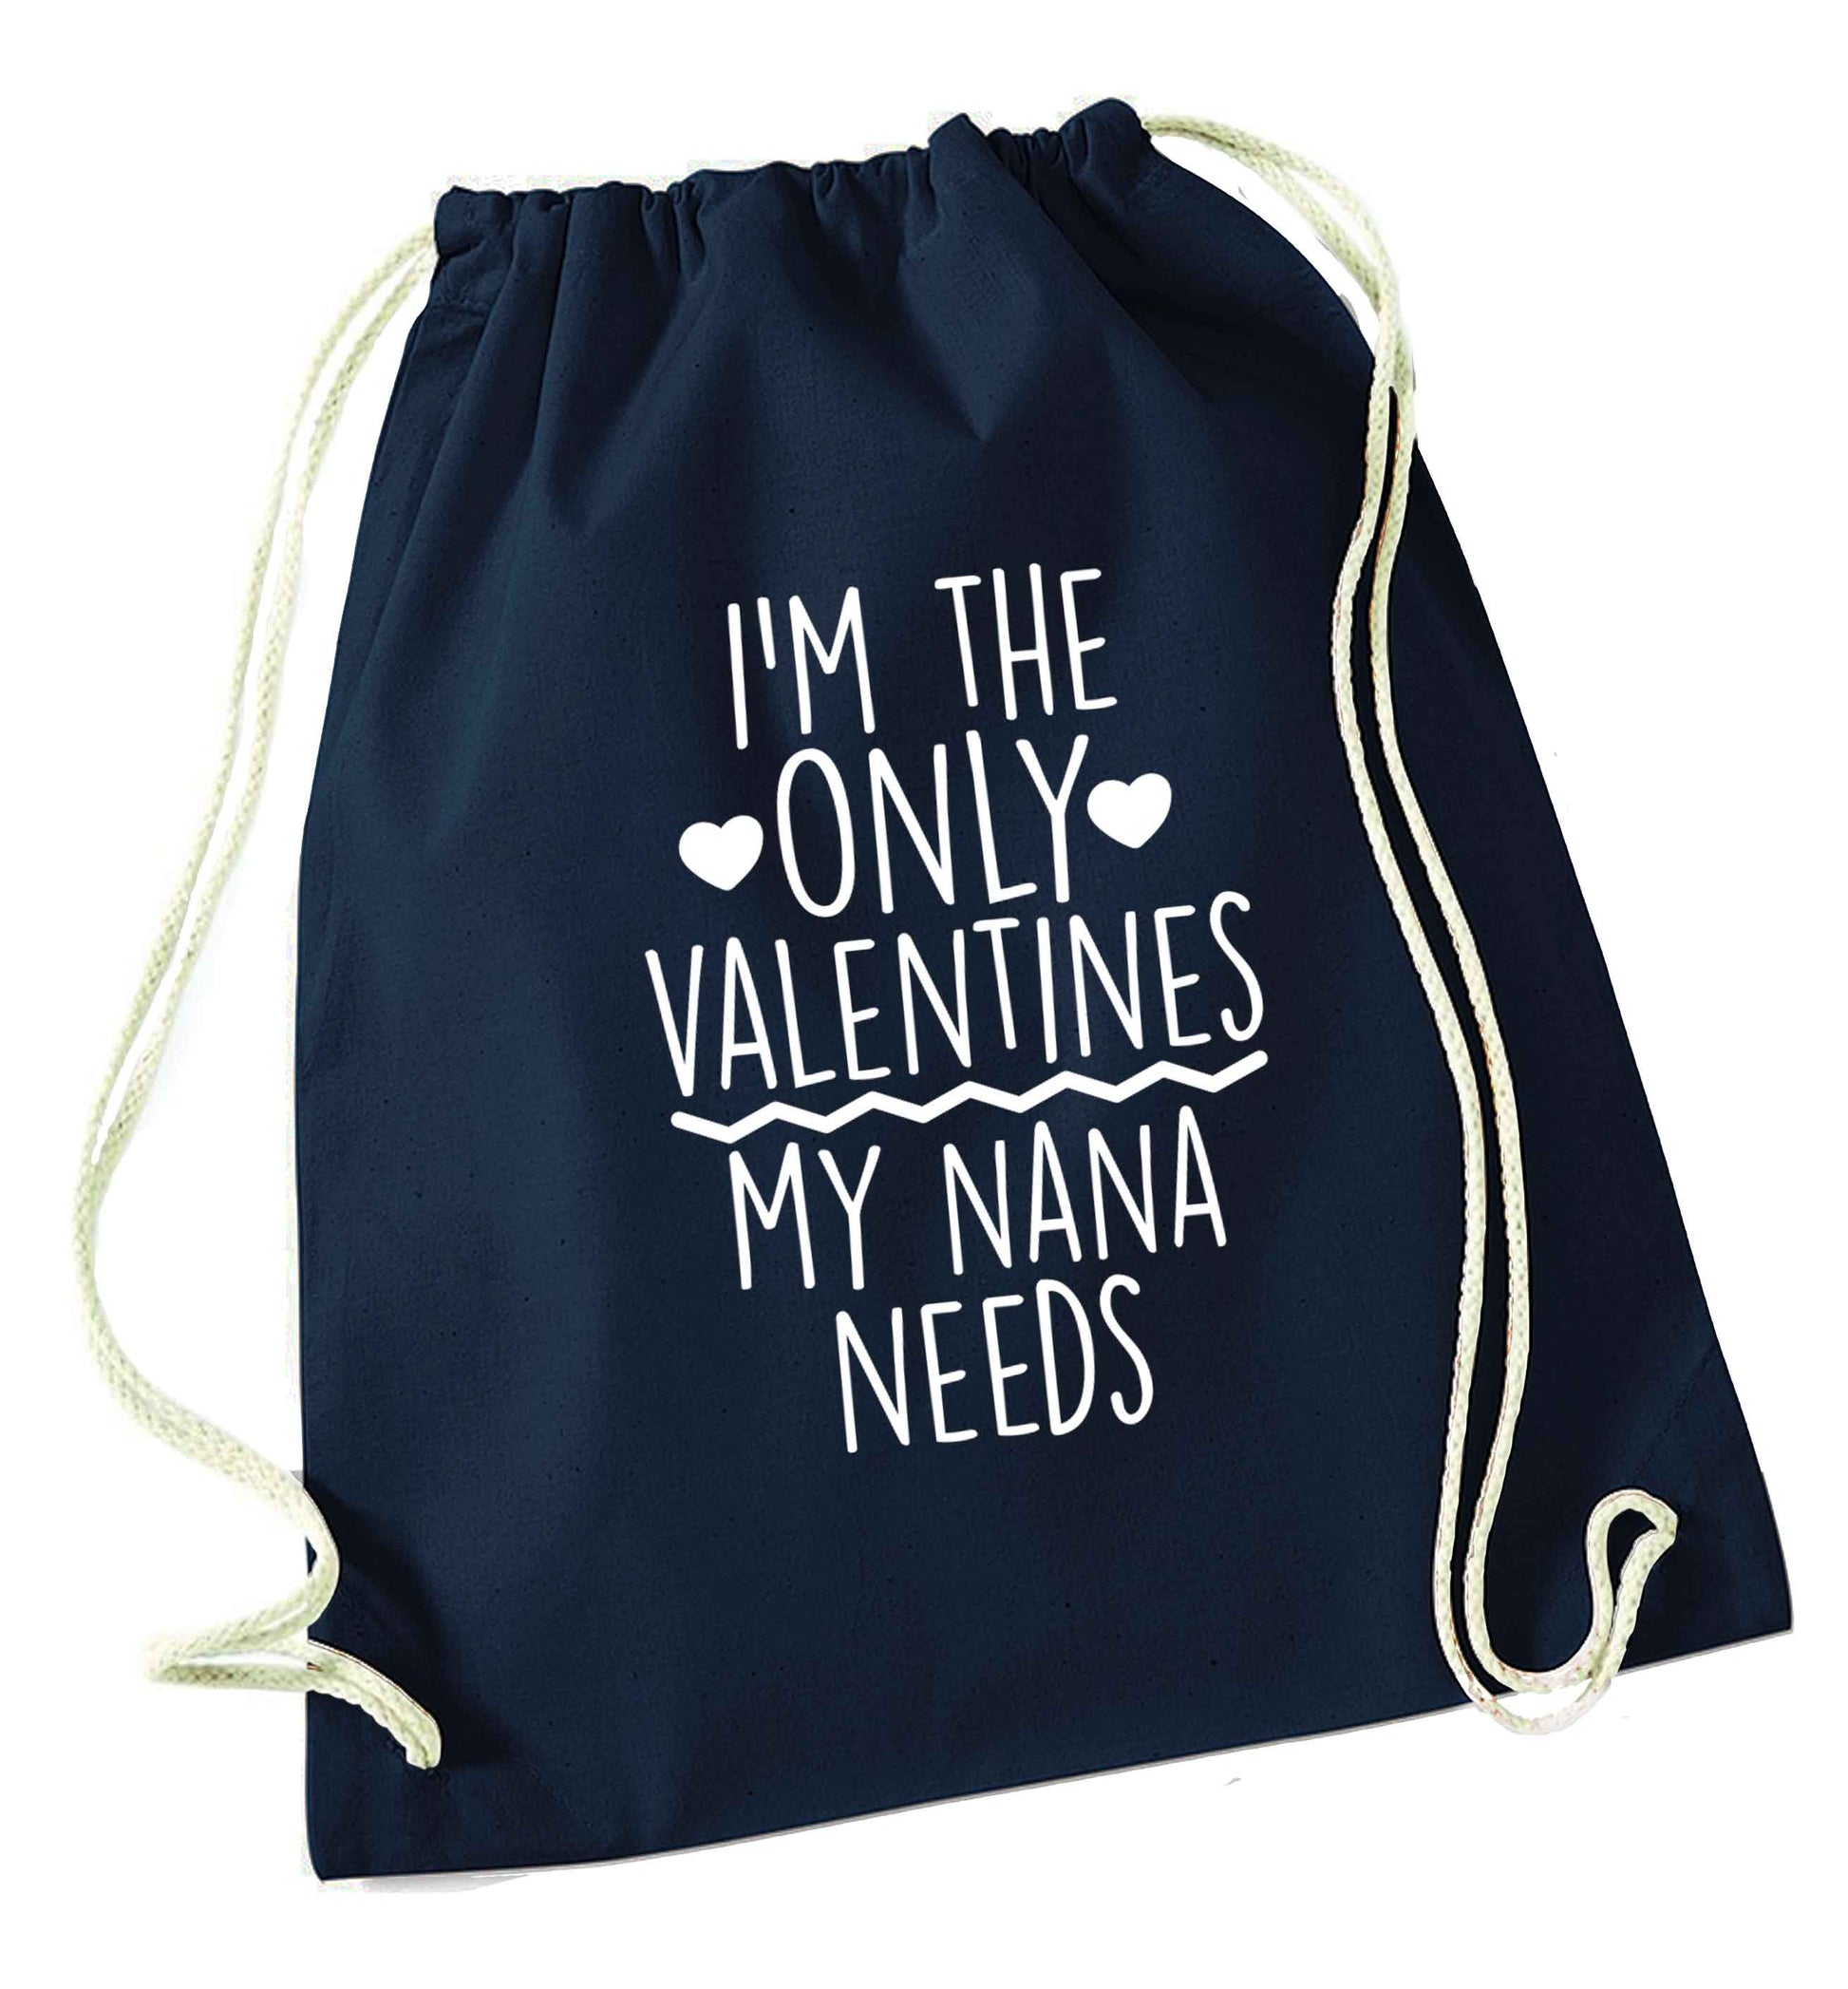 I'm the only valentines my nana needs navy drawstring bag